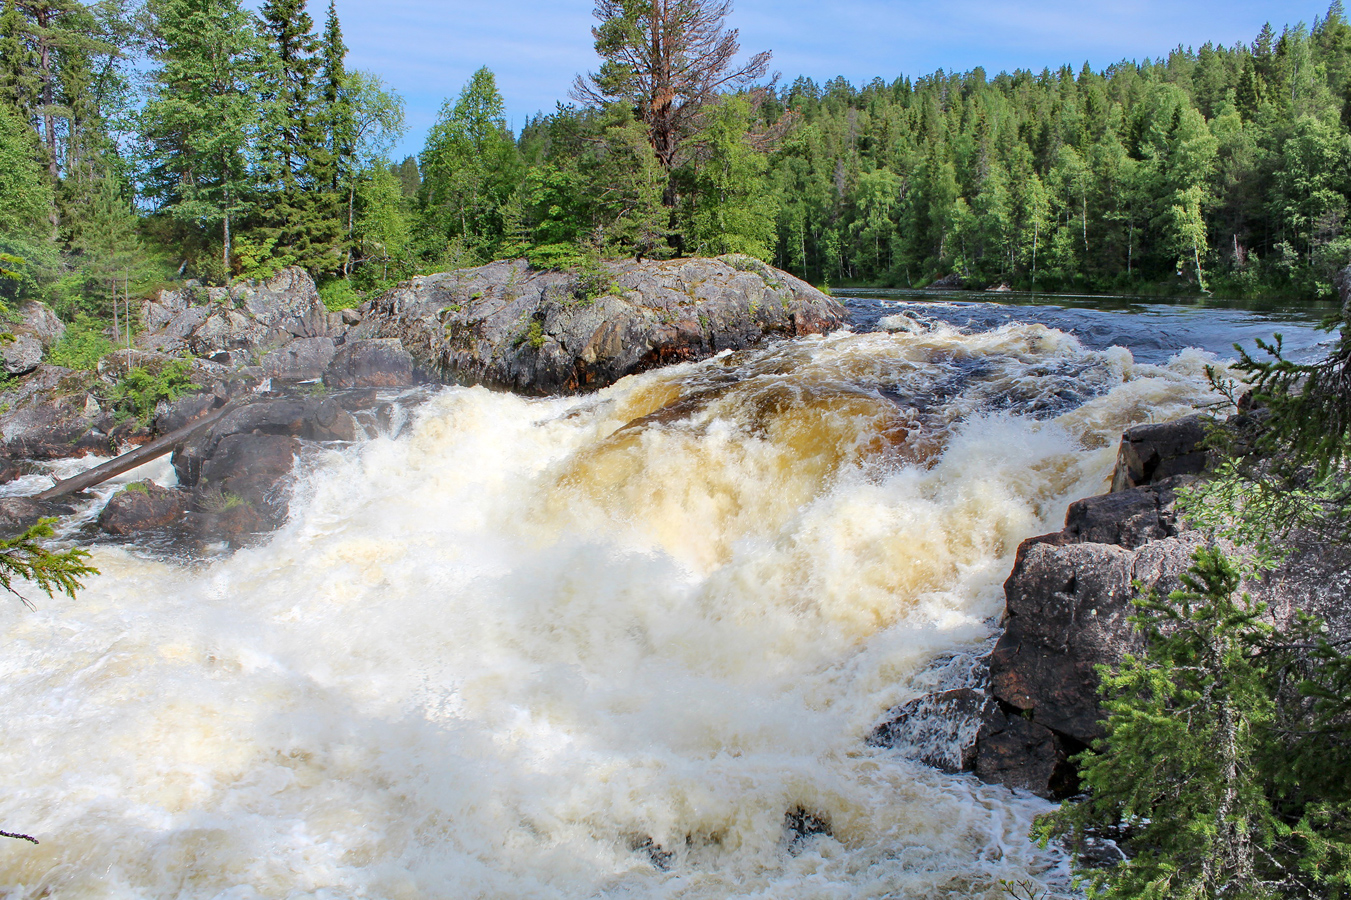 July 25, 2017. Kivakka Waterfall